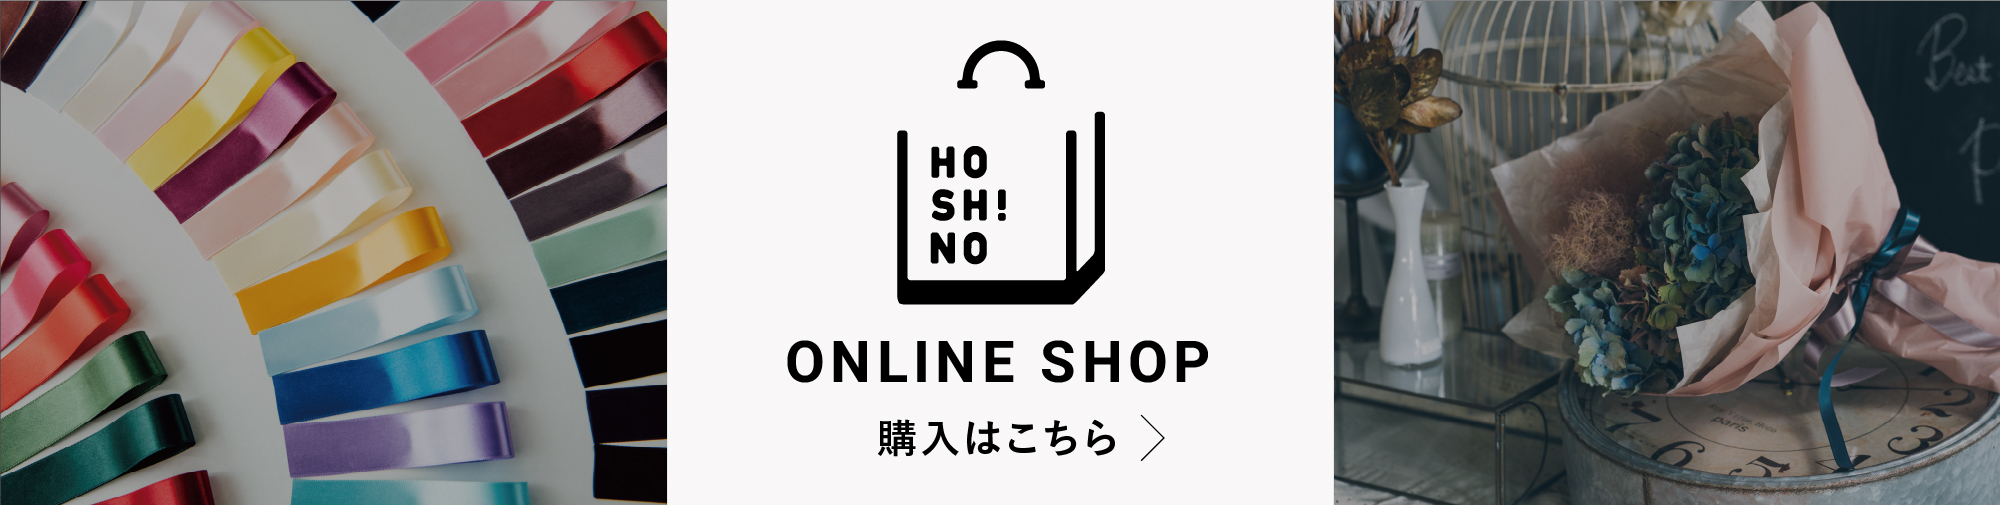 HOSHINO ONLINE SHOP